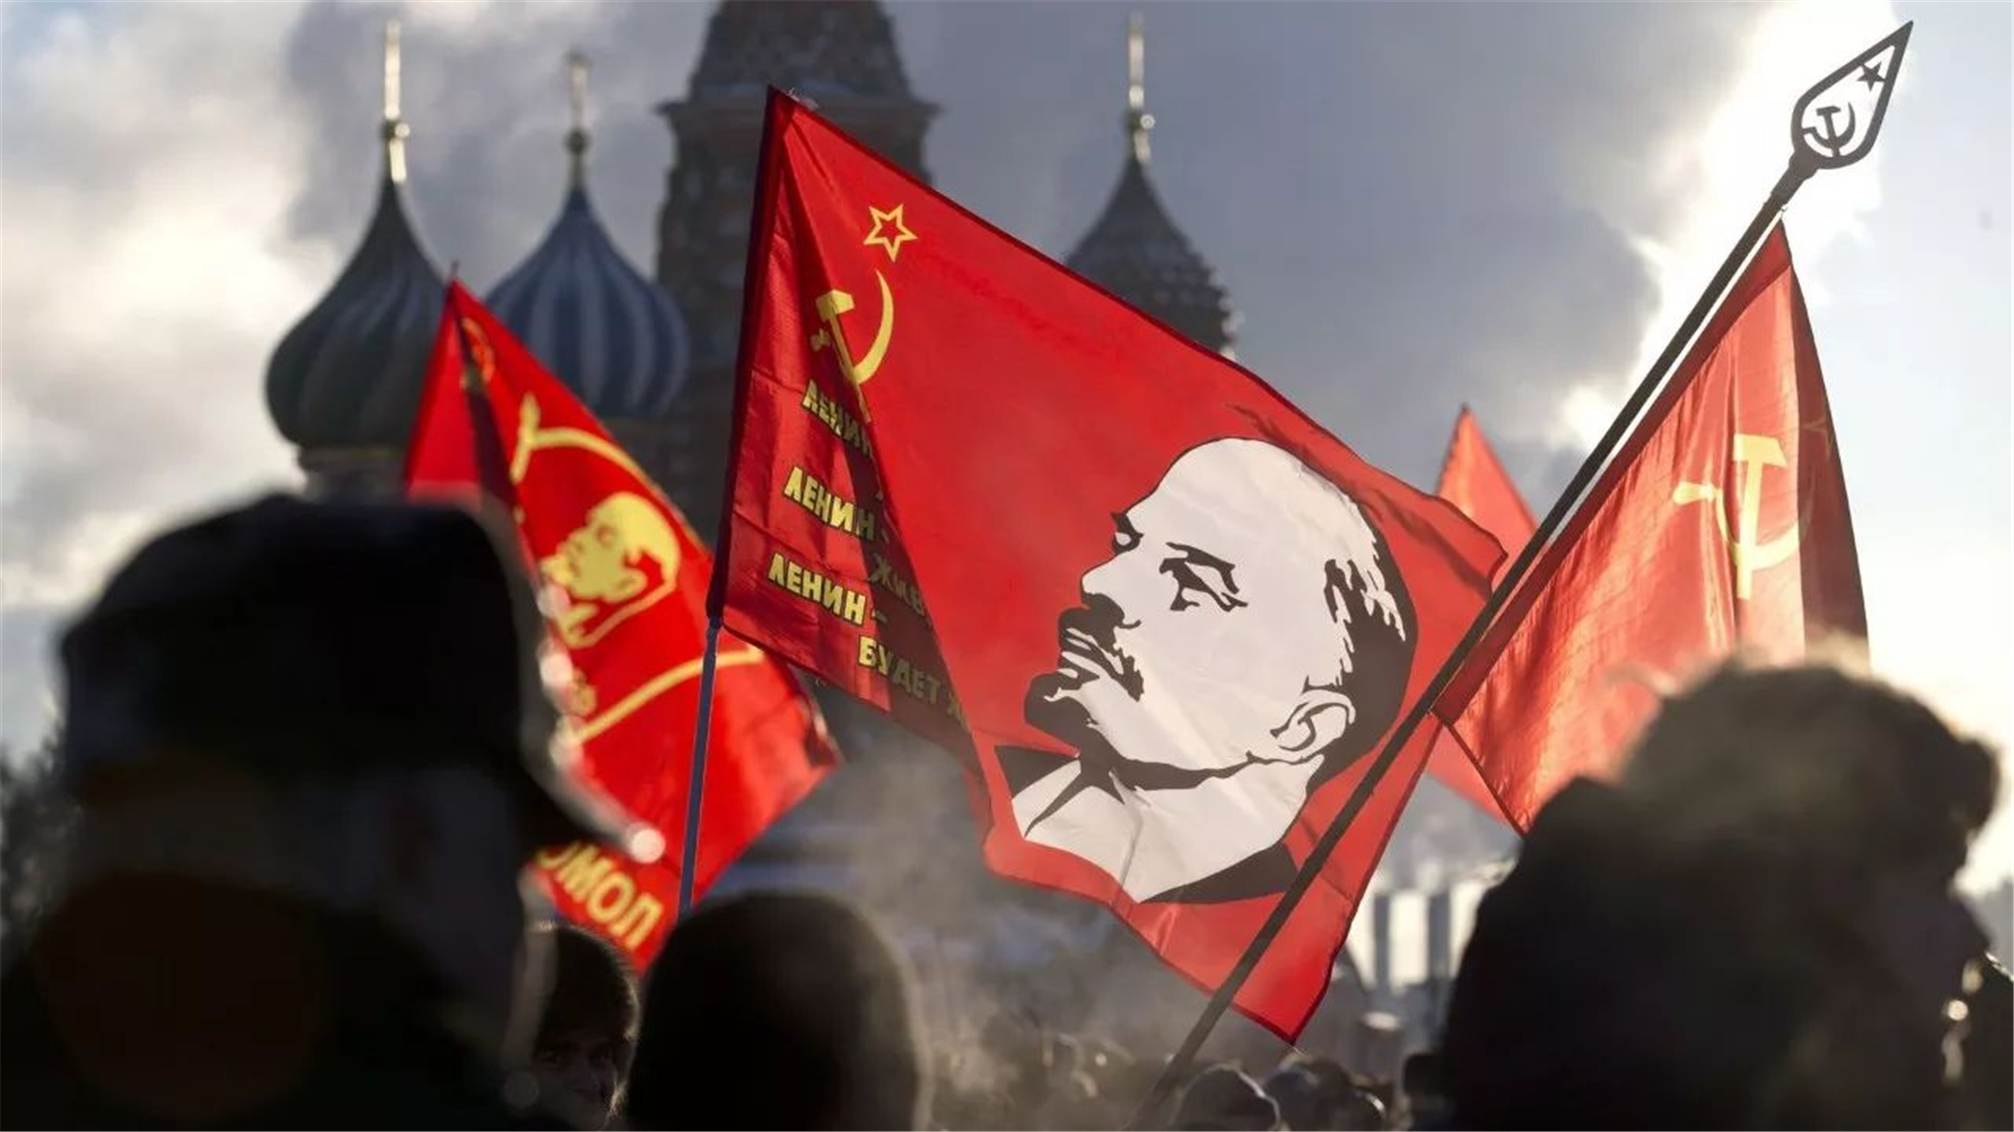 世界通简史:俄国十月起义,布尔什维克的政变,无产阶级崛起